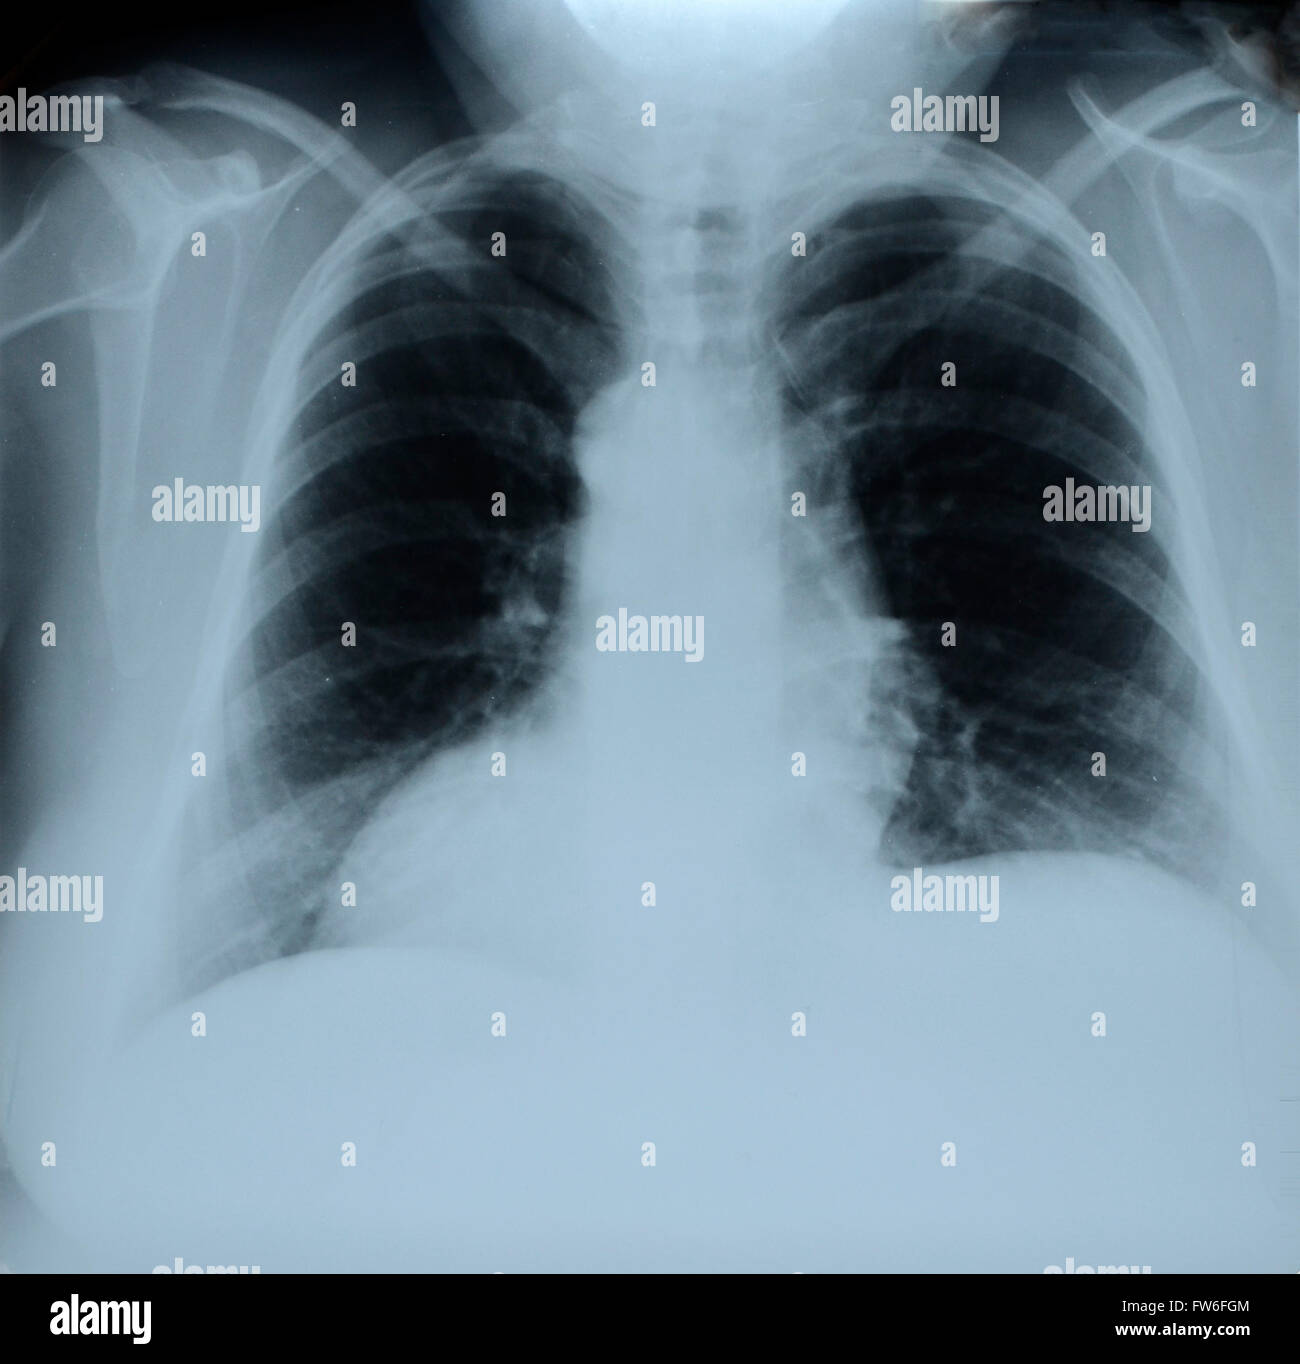 Radiographie de la poitrine humaine Banque D'Images